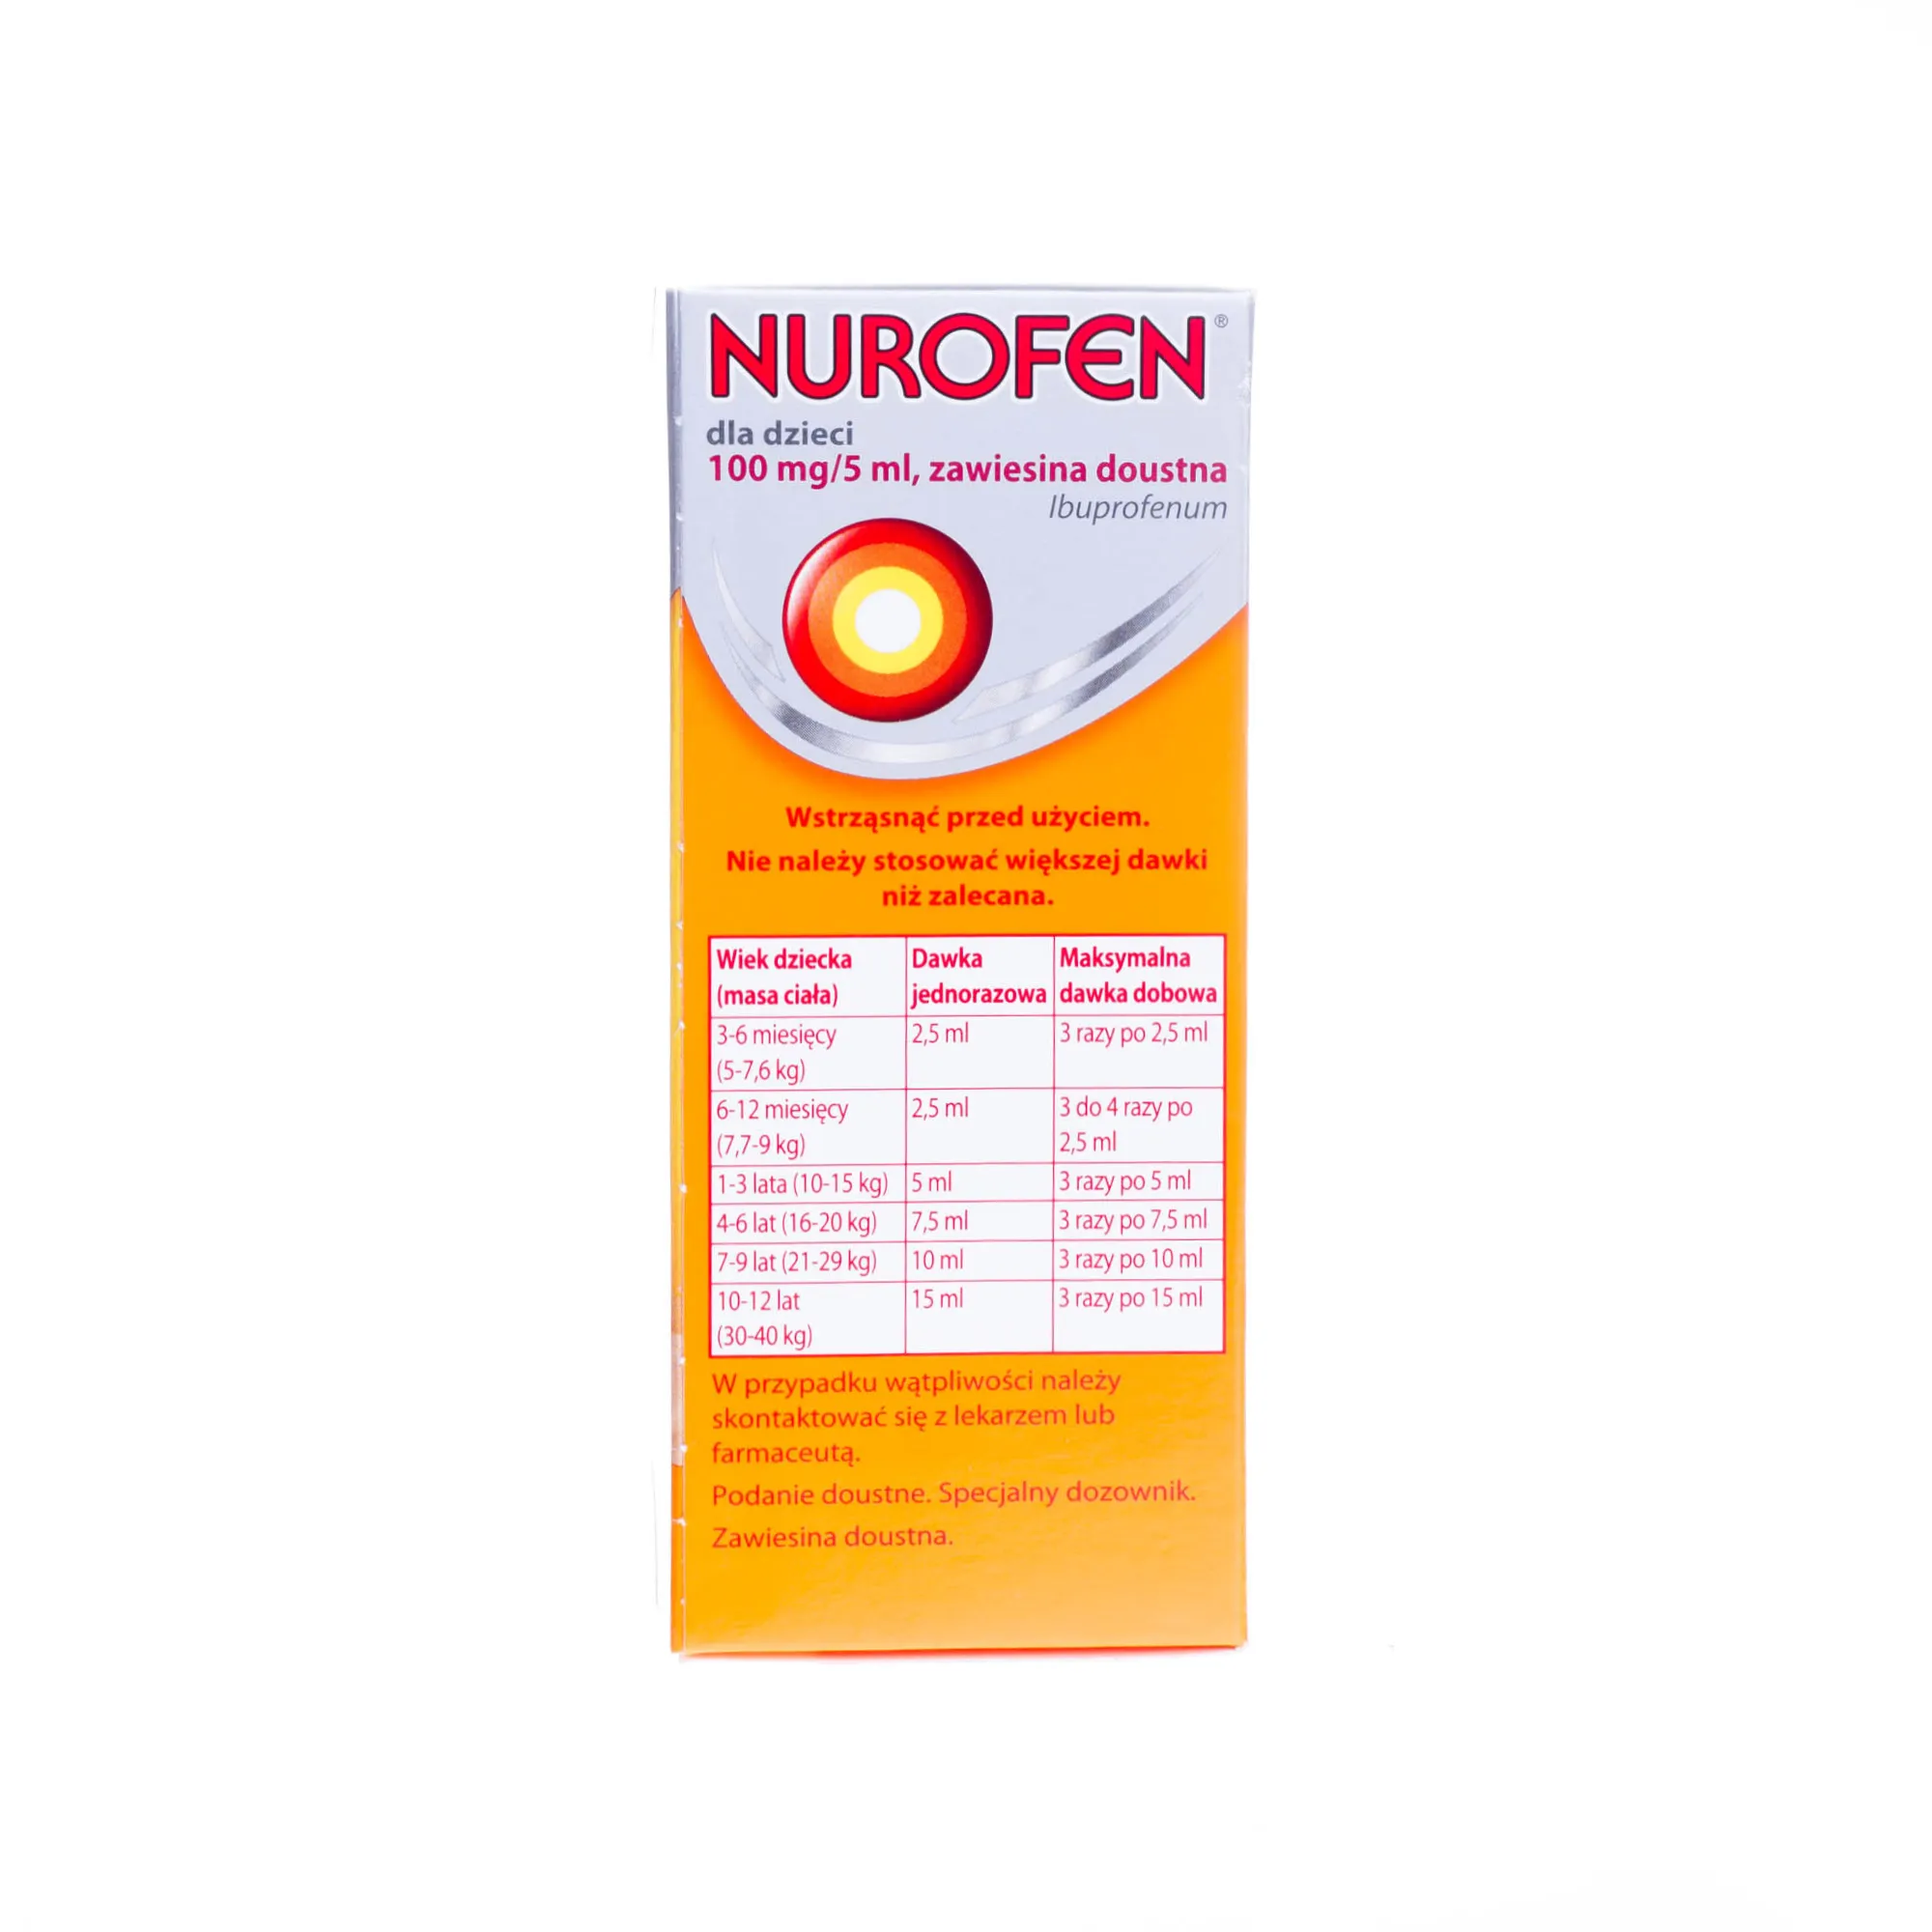 Nurofen 100 mg/5 ml, zawiesina doustna od 3 miesięcy, smak pomarańczowy, 100 ml 